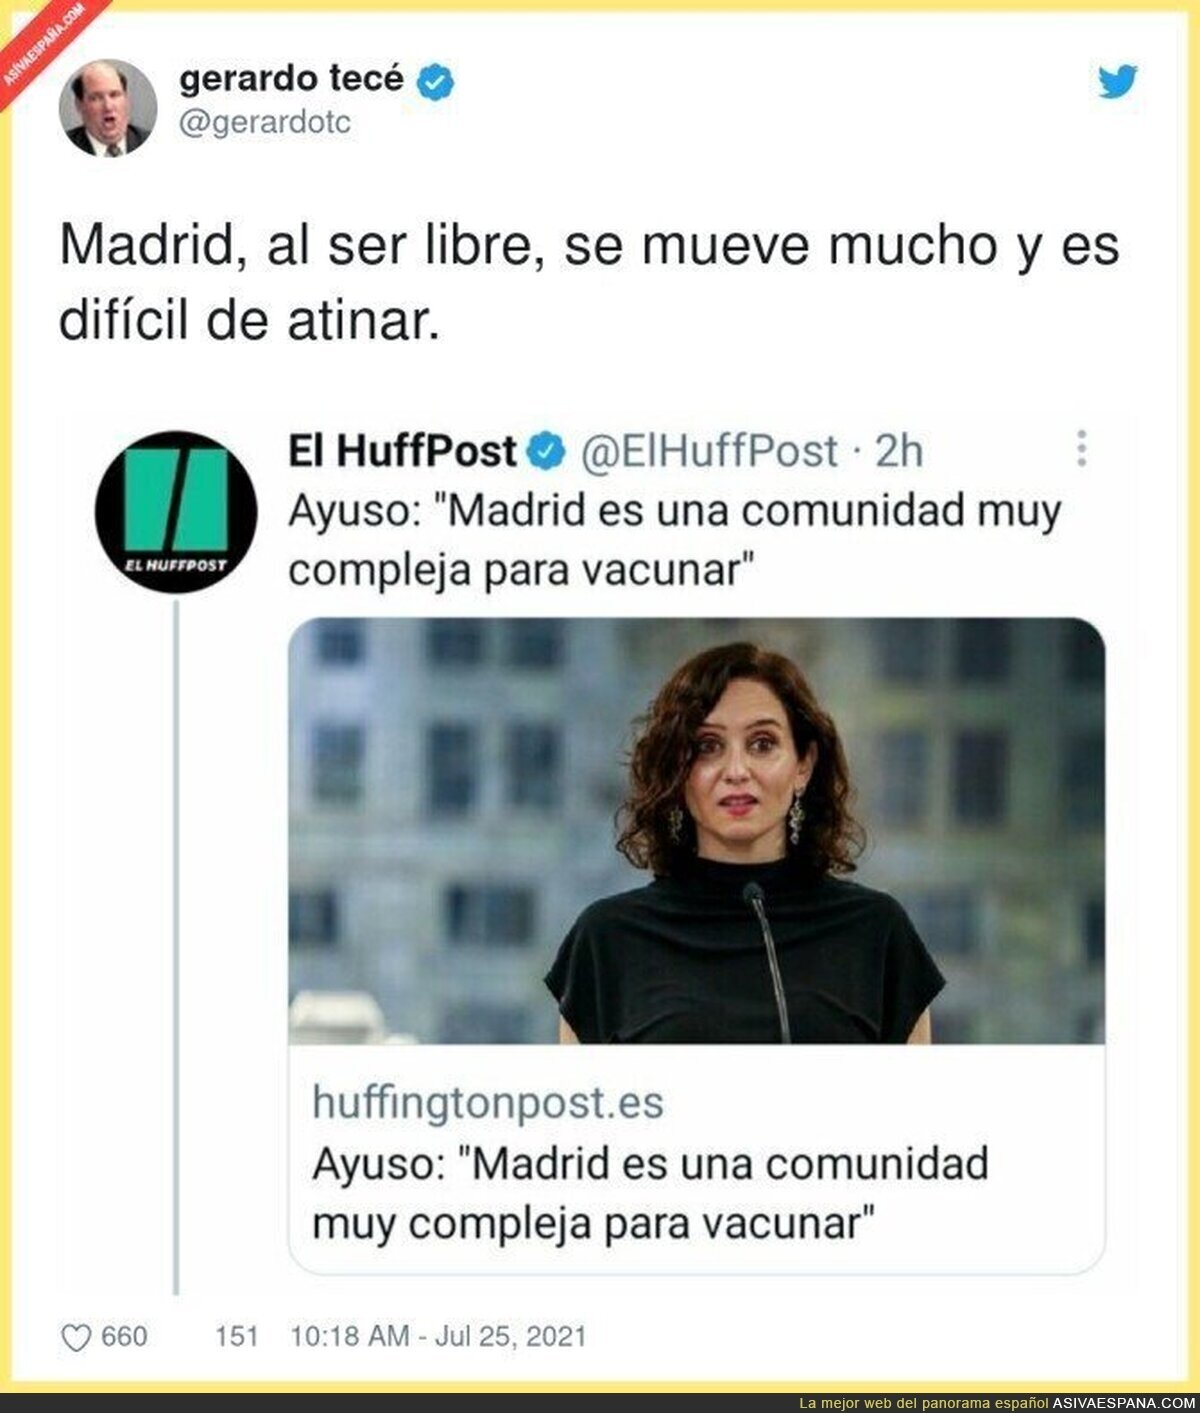 La gran complicación de Madrid